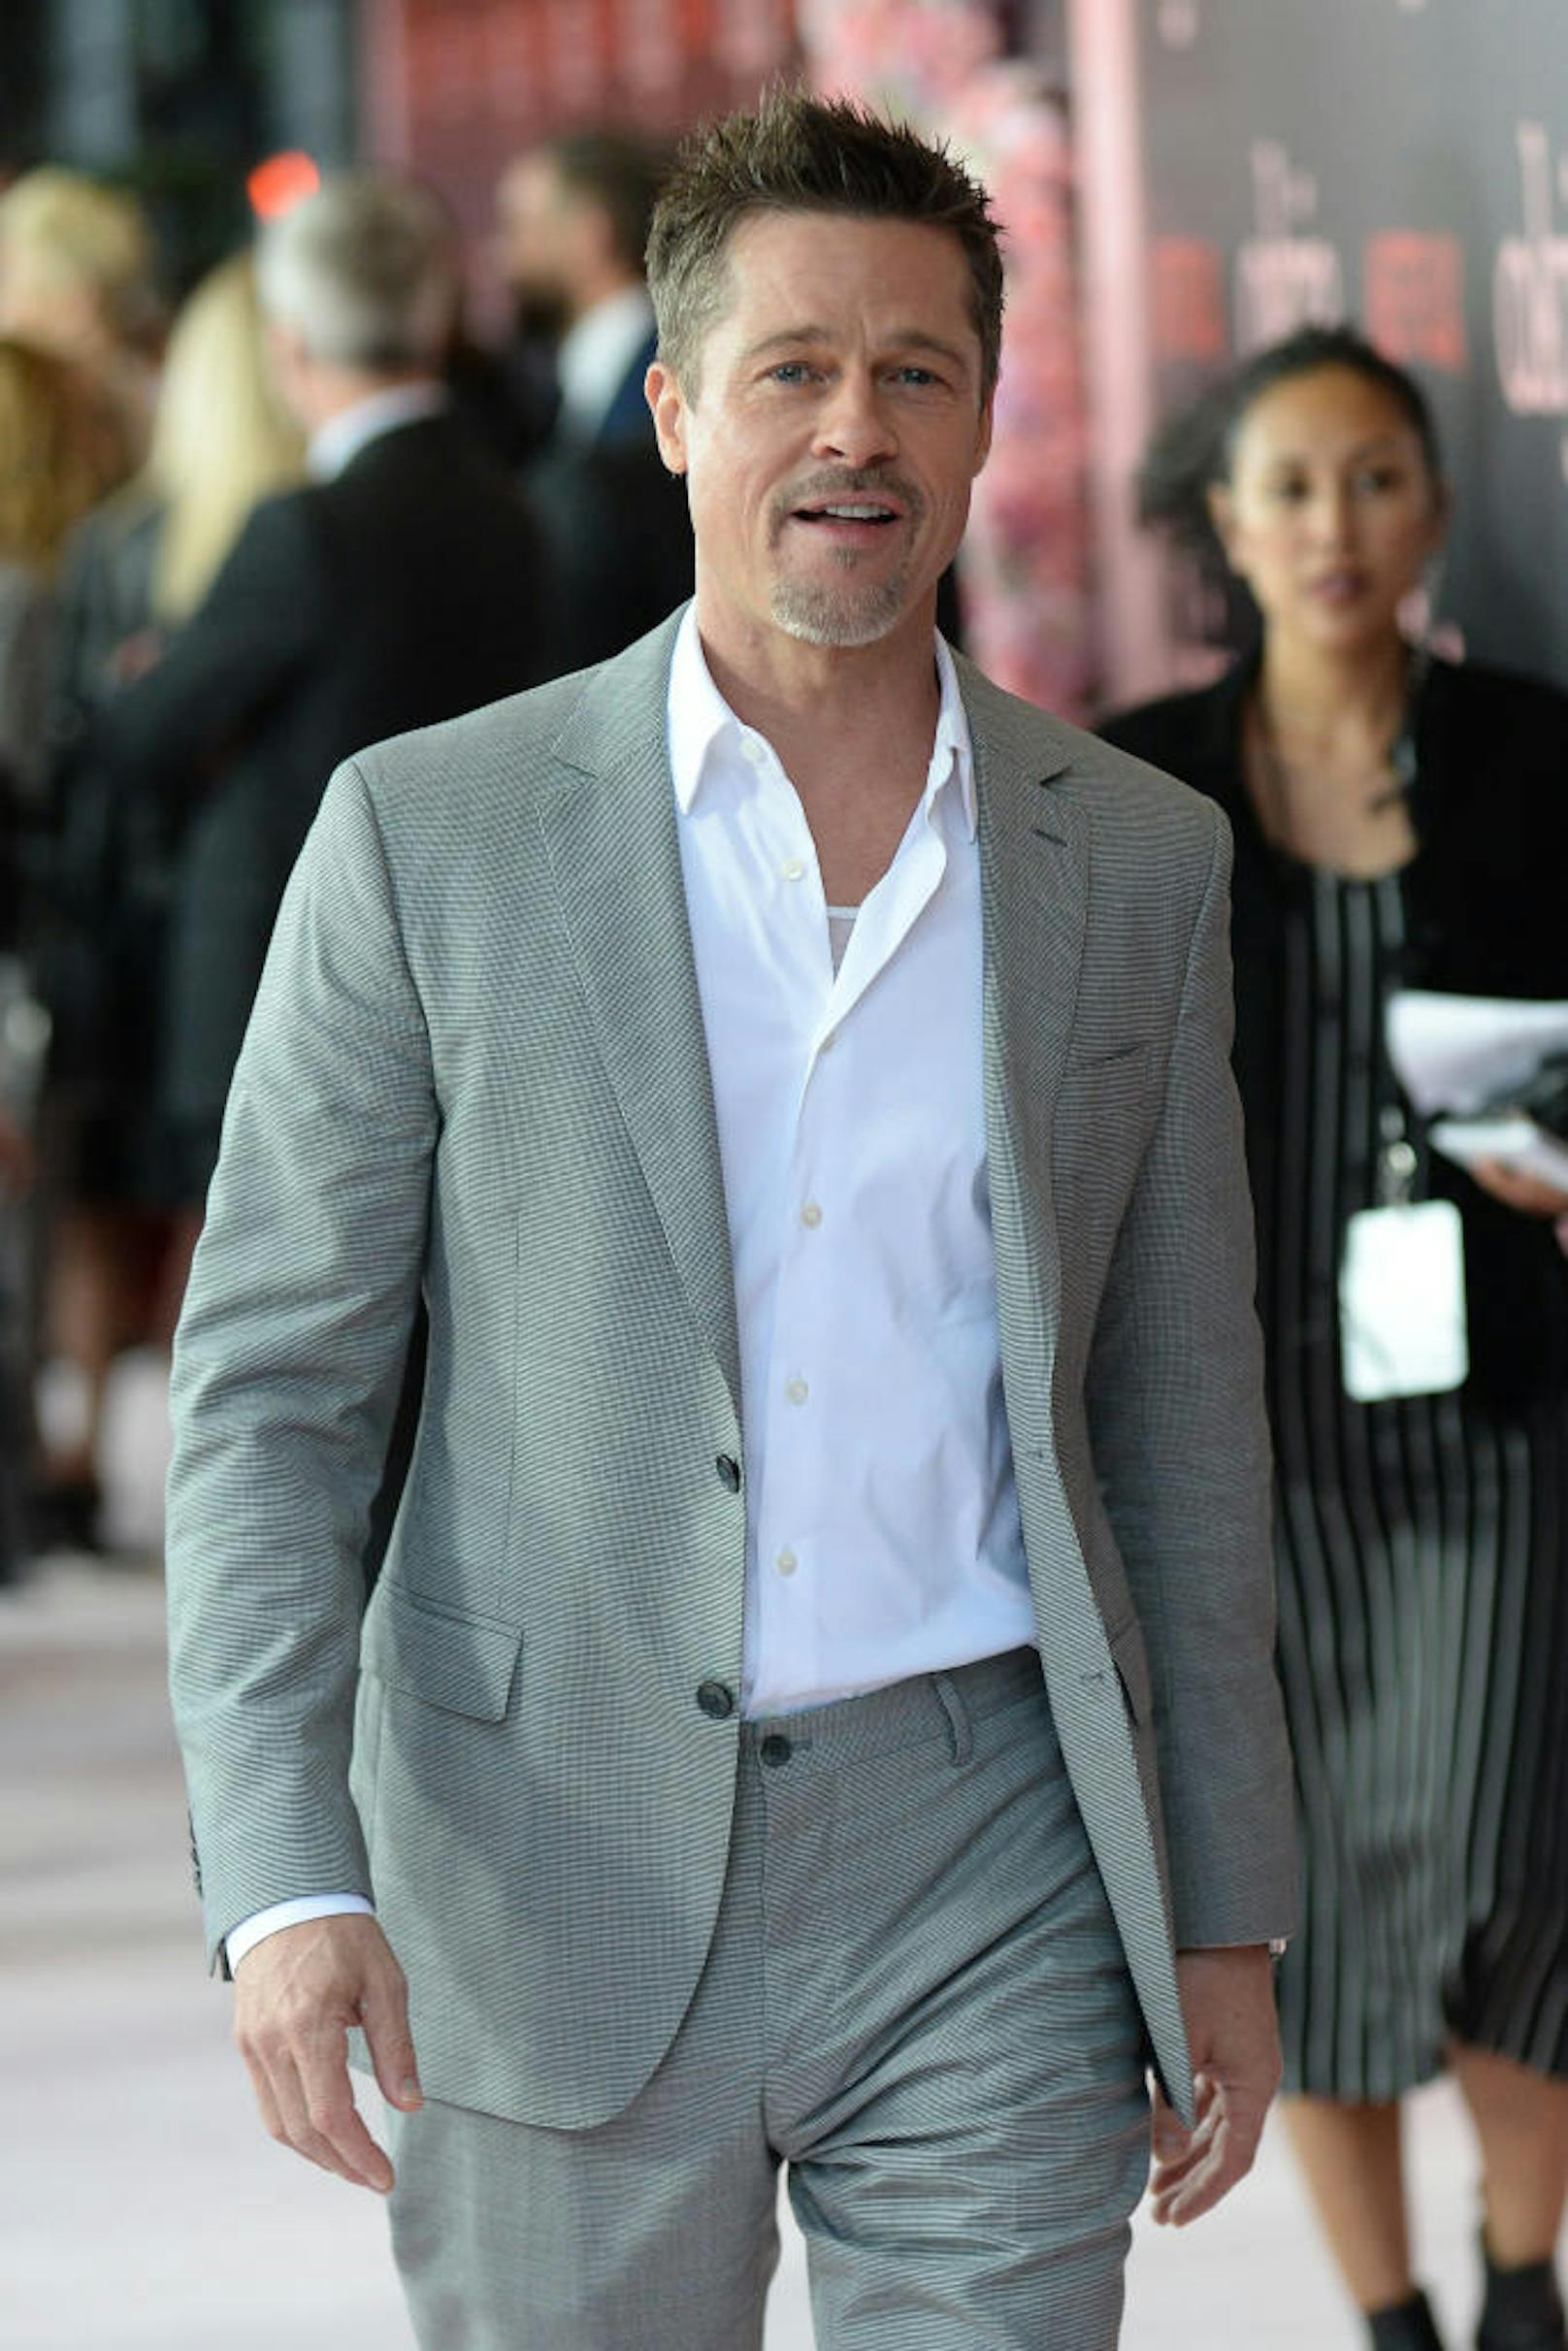 Brad Pitt hatte lange Zeit mit Alkoholproblemen zu kämpfen, wie er 2018 in einem Interview offenbarte. Mittlerweile hat er aufgehört: "Ich wollte nicht mehr so weiterleben."